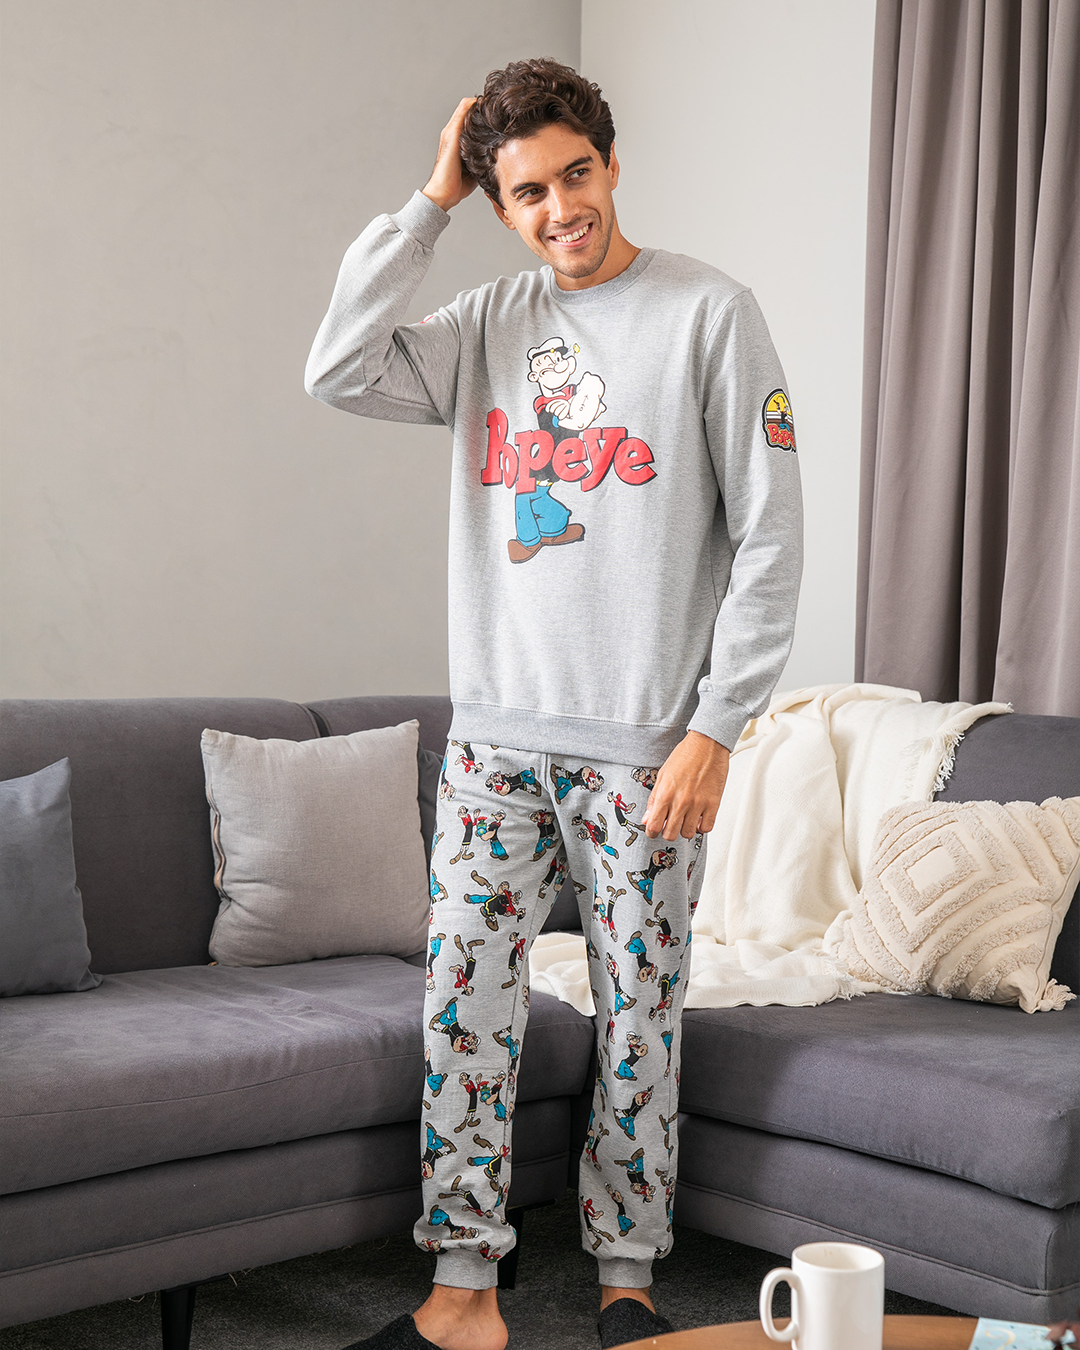 Popeye men's pajamas